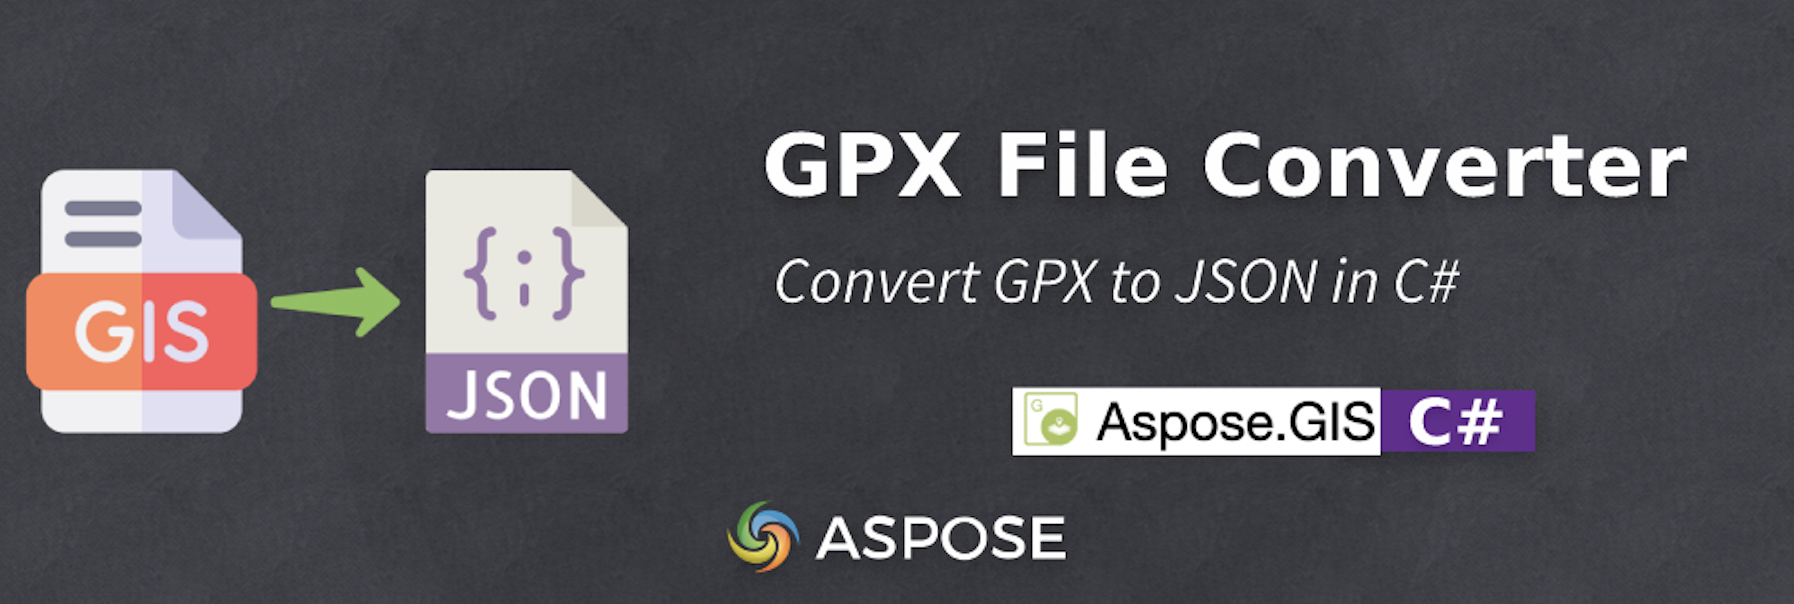 在 C# 中將 GPX 轉換為 JSON - GPX 檔案轉換器